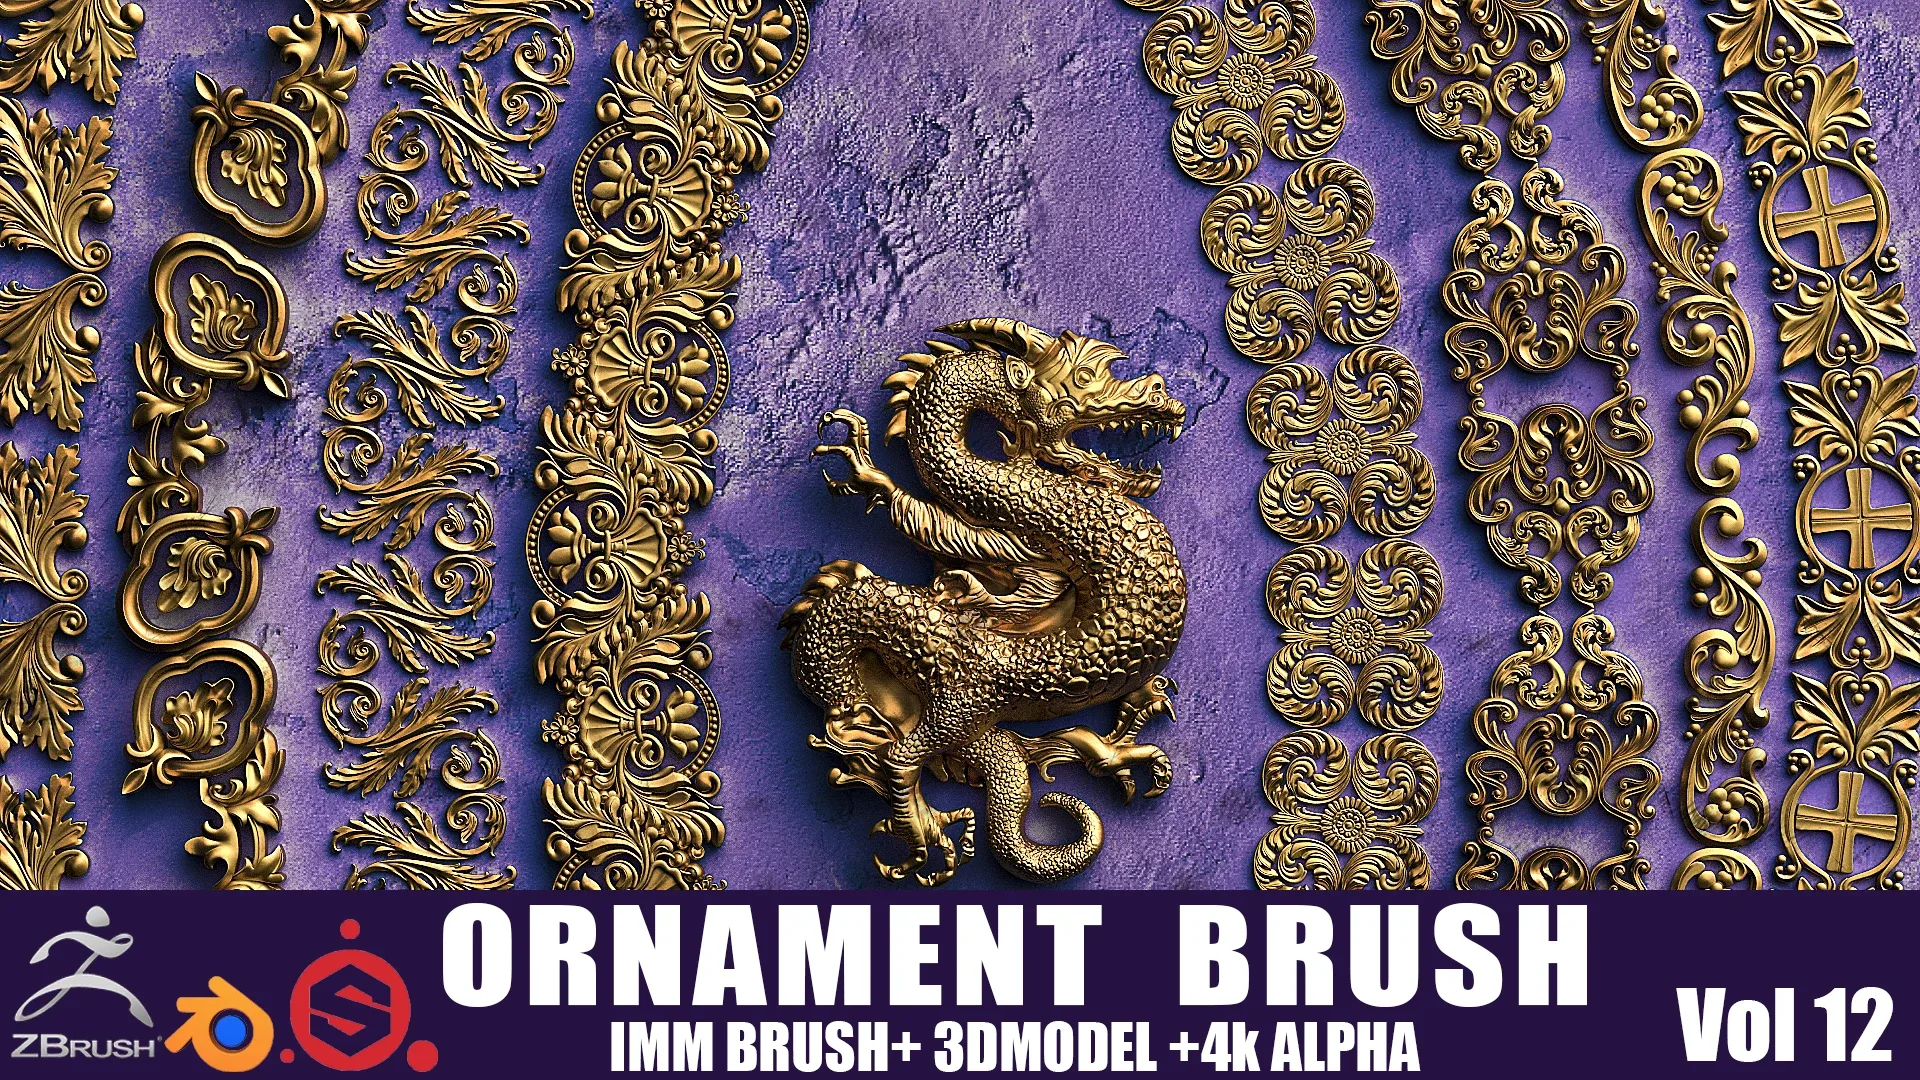 Fred's ORNAMENT BRUSH ( IMMBRUSH+3dModel+4kAlpha ) Vol 12